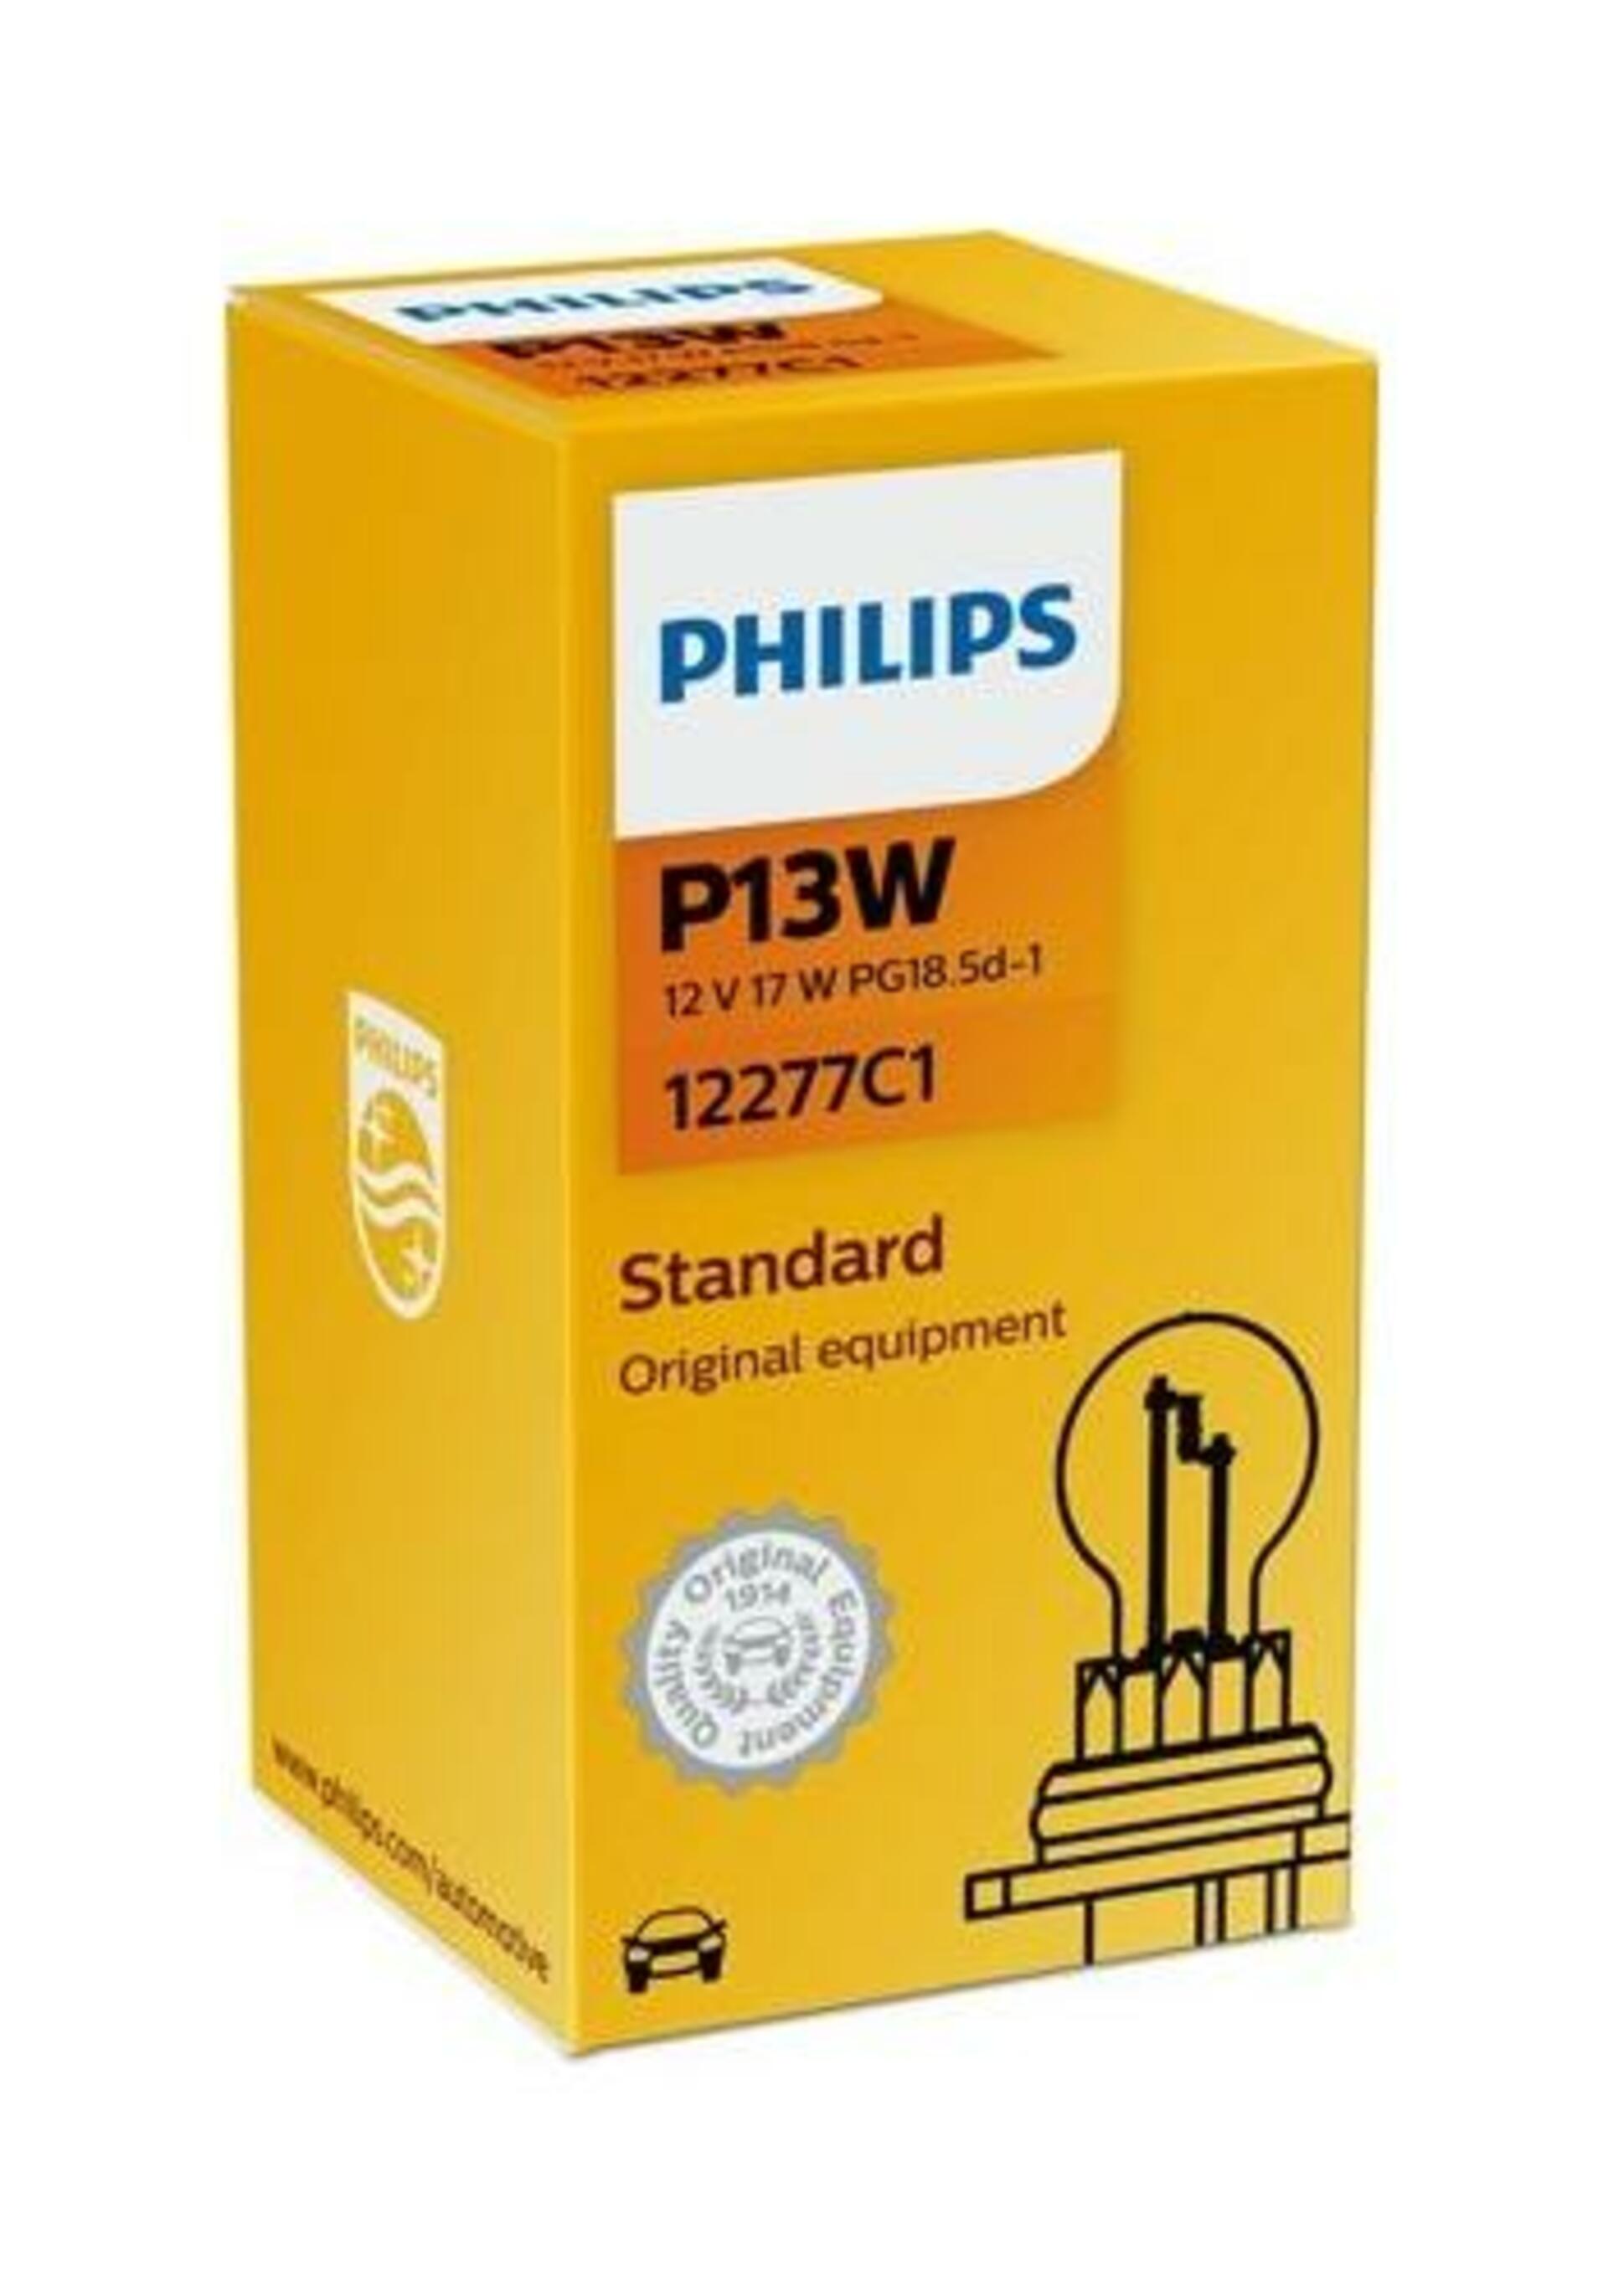 Philips P13W 12V 13W PG18.5d-1 1ks 12277C1